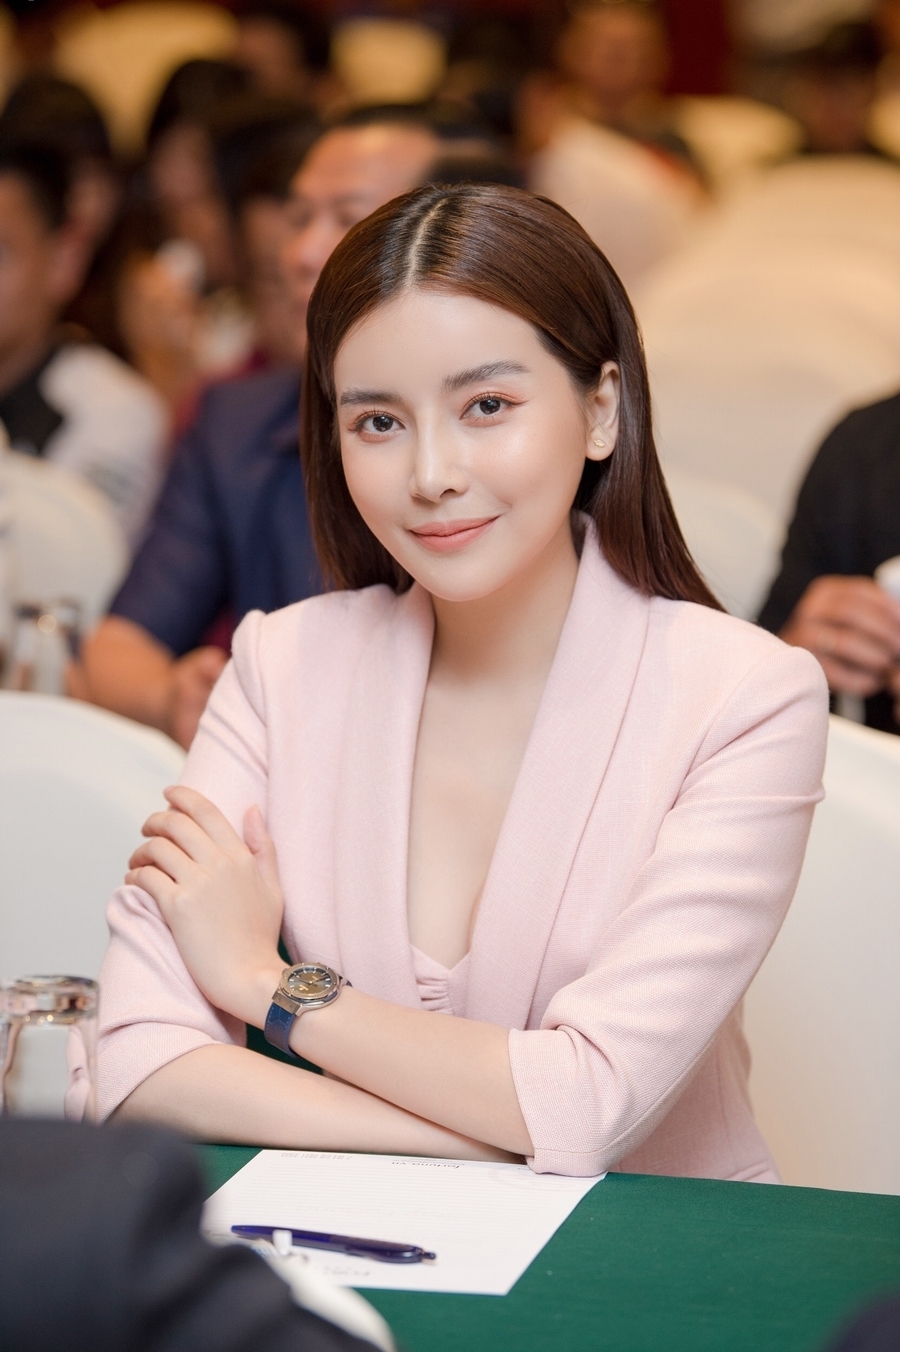 Cao Thái Hà là nữ diễn viên xinh đẹp của màn ảnh Việt. Một số vai diễn để lại ấn tượng trong phim như 'Hậu duệ mặt trời', 'Tiếng sét trong mưa', 'Kiều'...